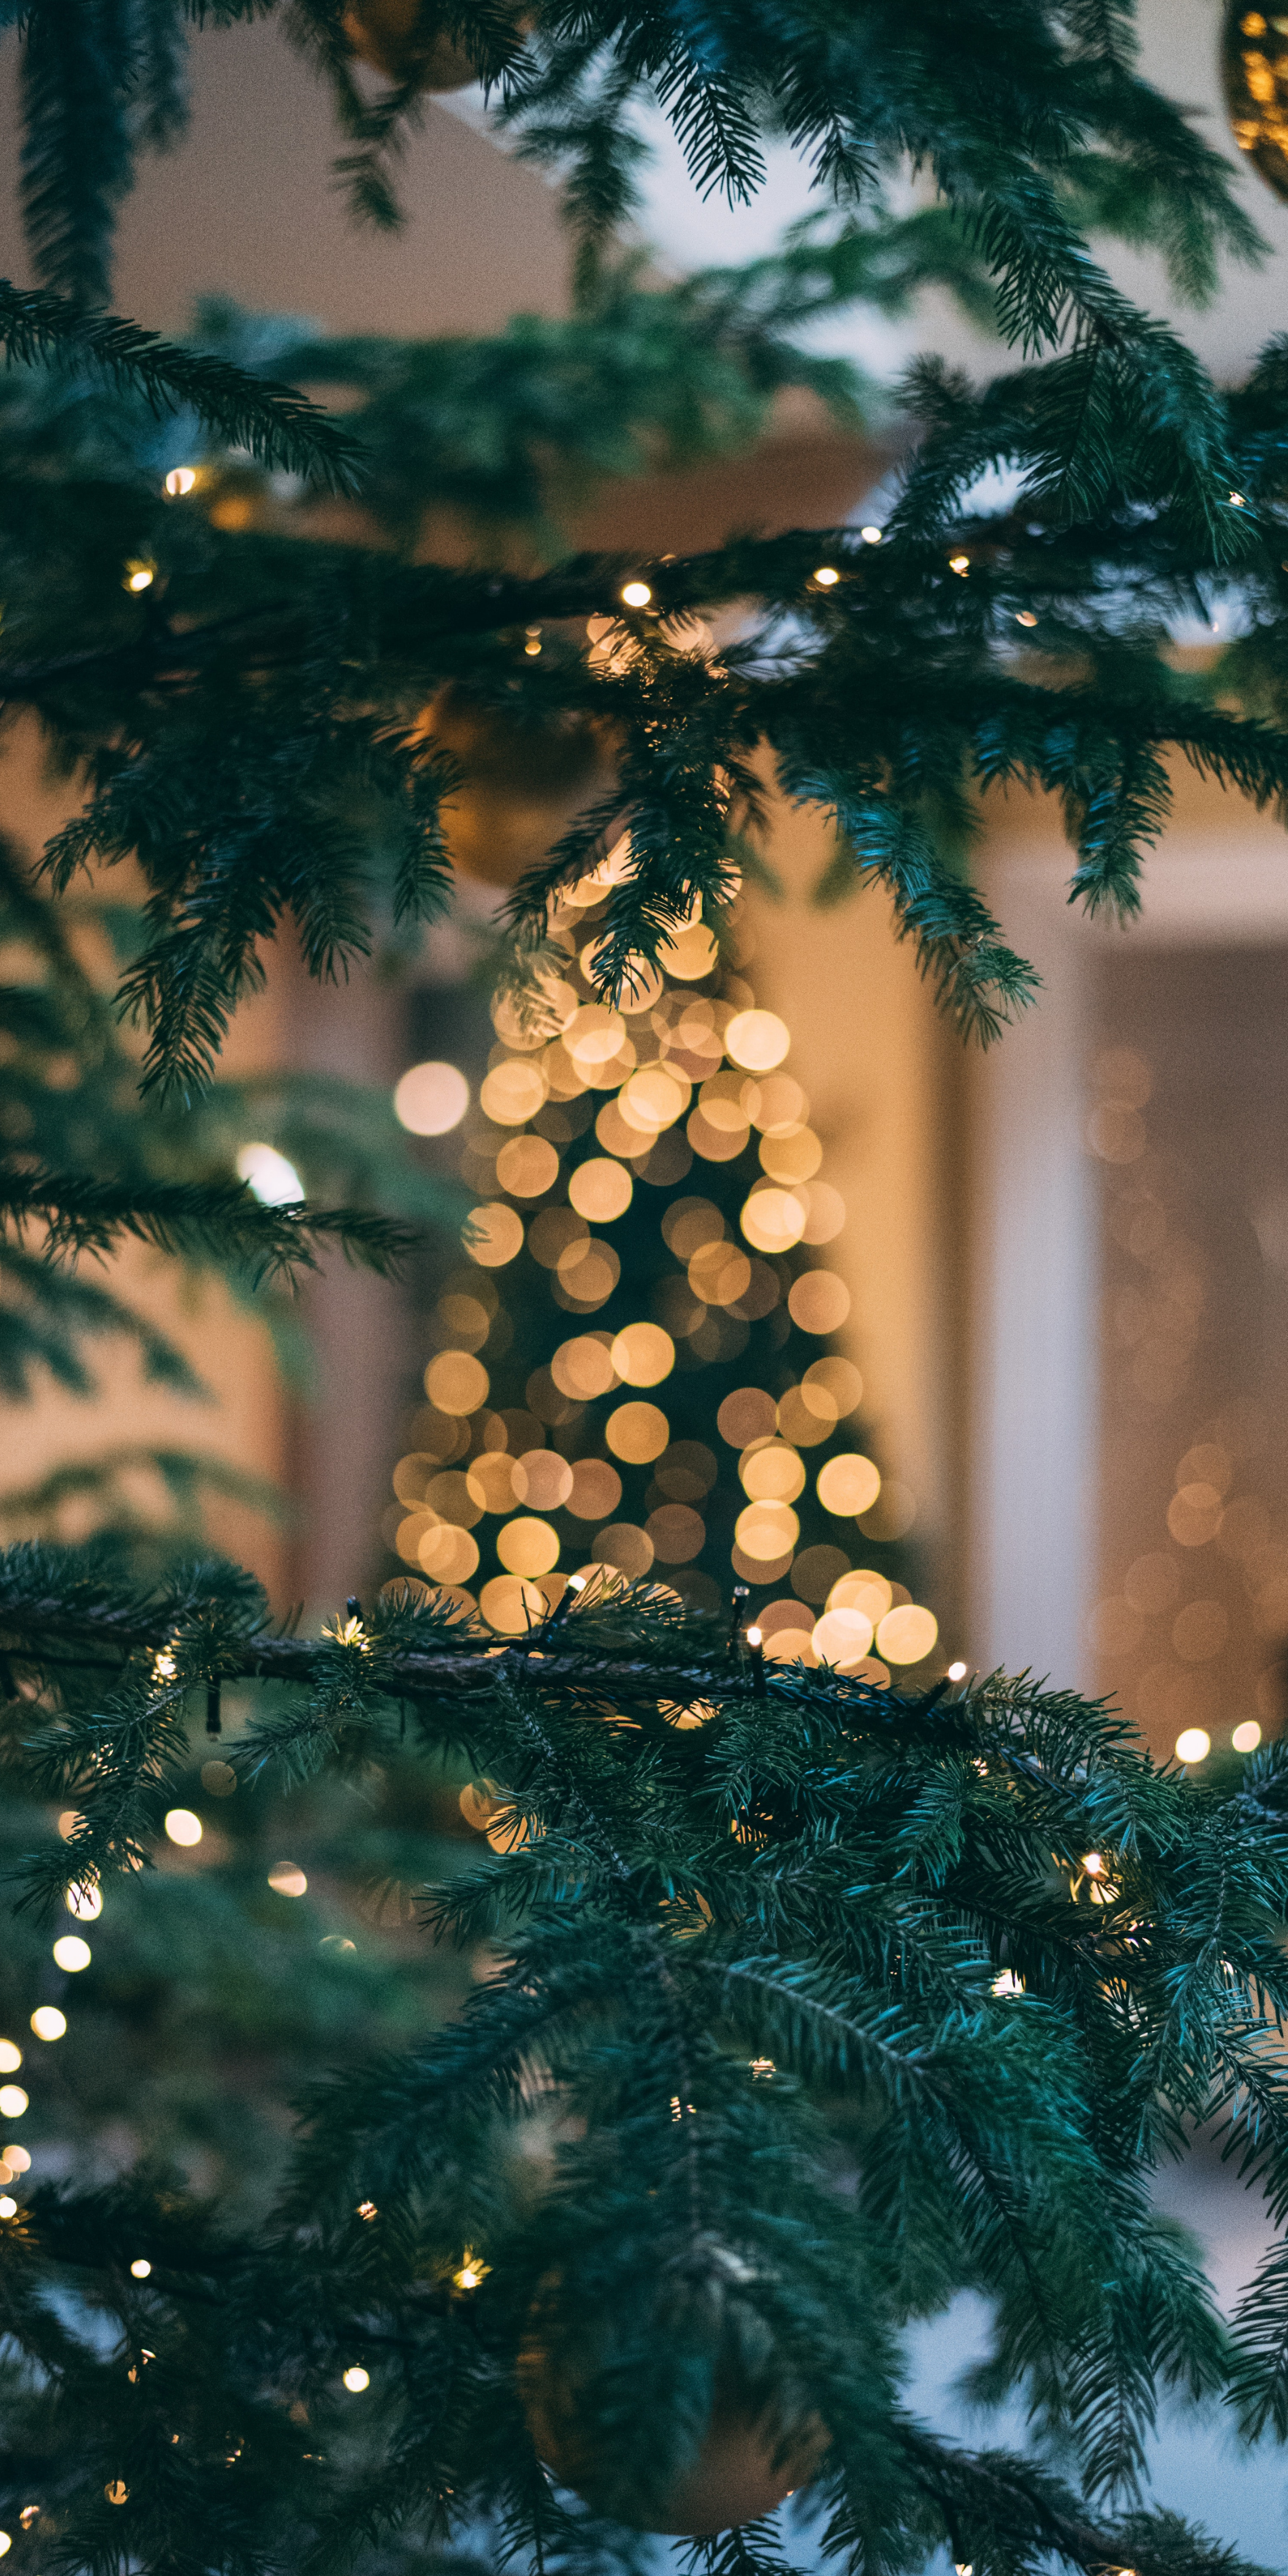 Lấy cảm hứng từ những đèn trang trí lộng lẫy và ý nghĩa của ngày lễ Giáng sinh năm nay tại Mỹ, hãy xem qua bức hình nền Giáng sinh Hoa Kỳ để đón chào một mùa lễ hội rực rỡ và ý nghĩa.